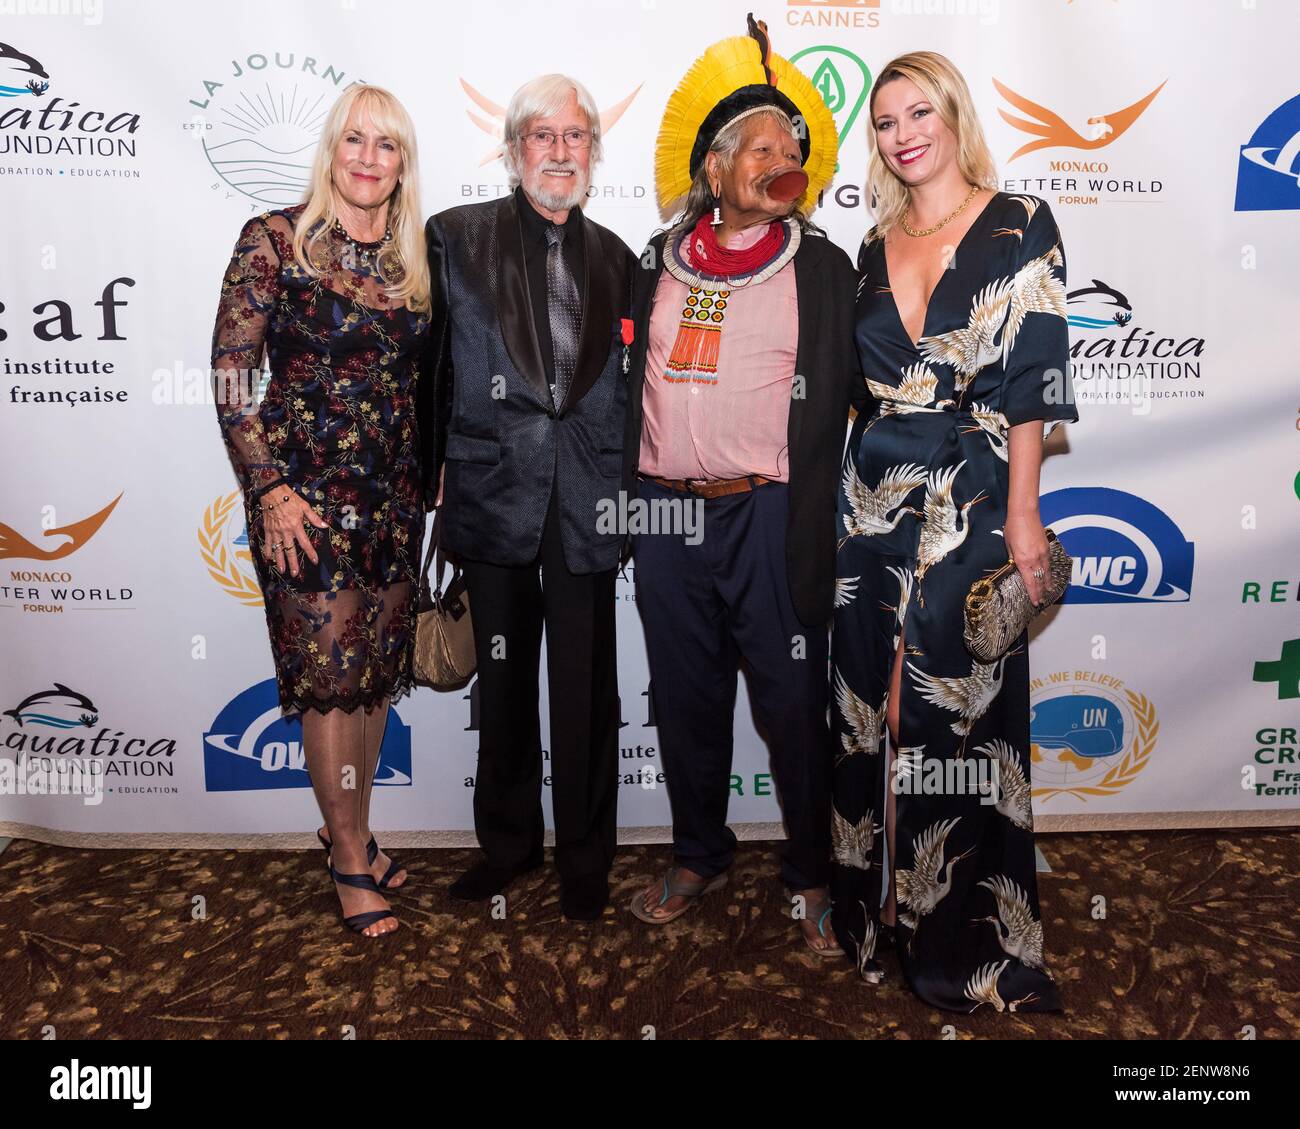 Jean-Michel Cousteau (milieu) avec l'épouse Nancy Marr et le chef Raoni  Metuktyre au dîner de gala DU MONACO Better World au Westin Grand Central à  New York le 22 septembre 2019 Photo